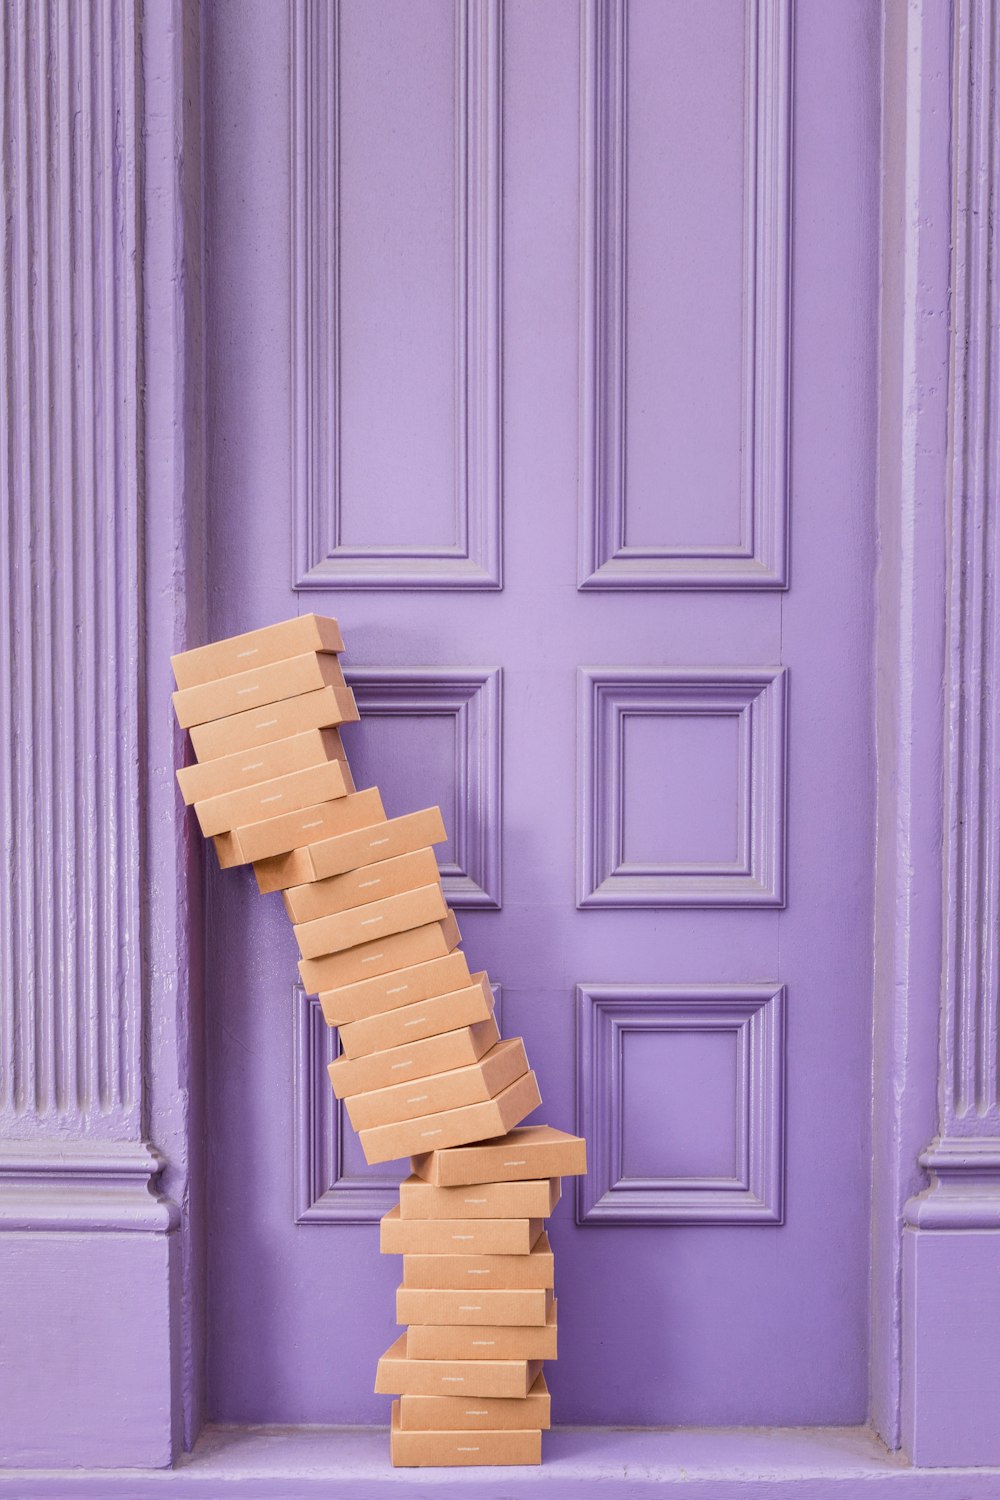 Pila de cajas marrones junto a la pared de madera púrpura